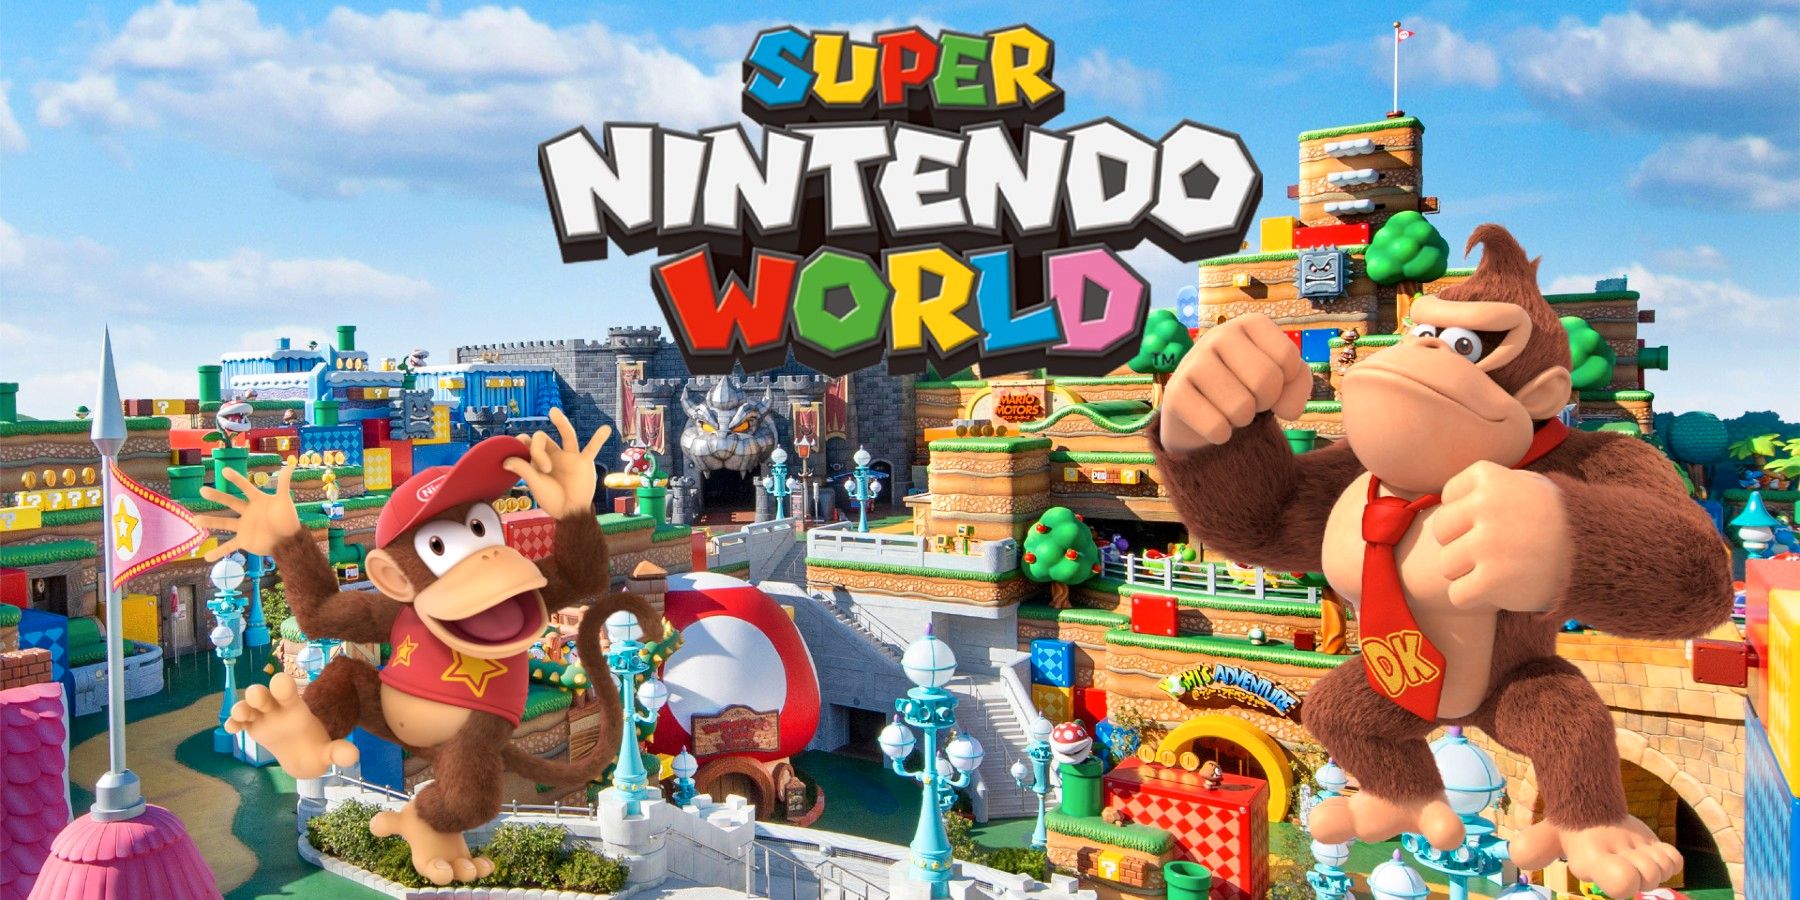 Super Nintendo World potwierdza ekspansję Donkey Kong